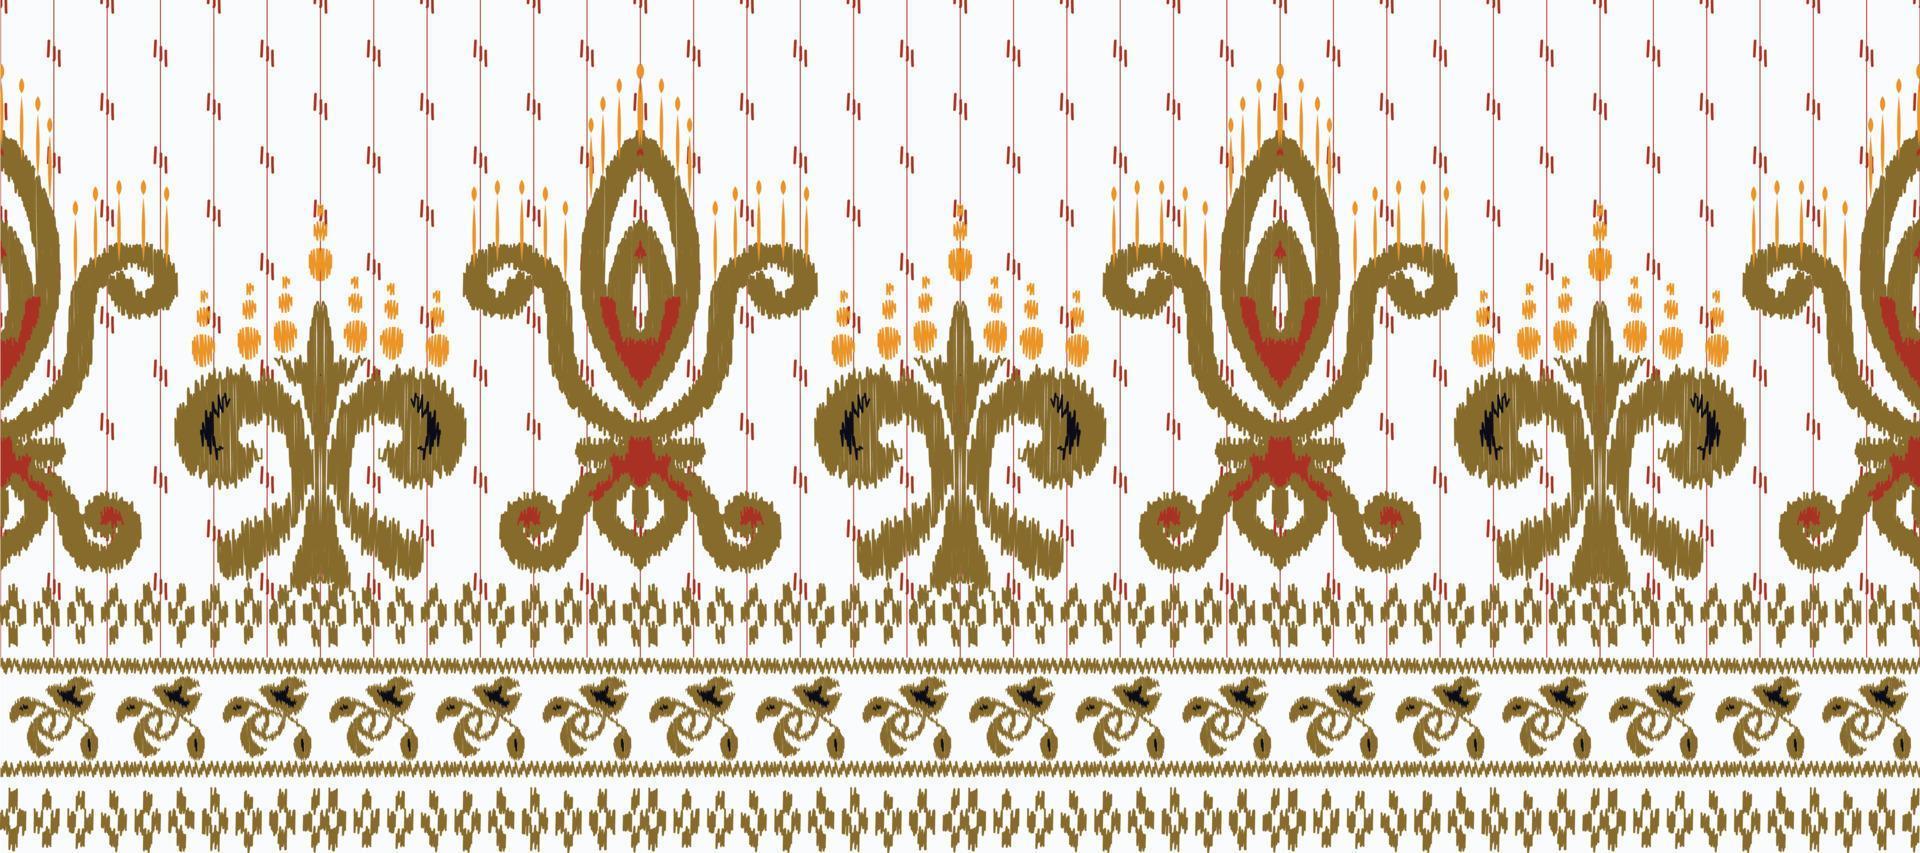 africano ikat paisley ricamo. batik tessile ikat Stampa senza soluzione di continuità modello digitale vettore design per Stampa saree Kurti Borneo tessuto confine spazzola elegante